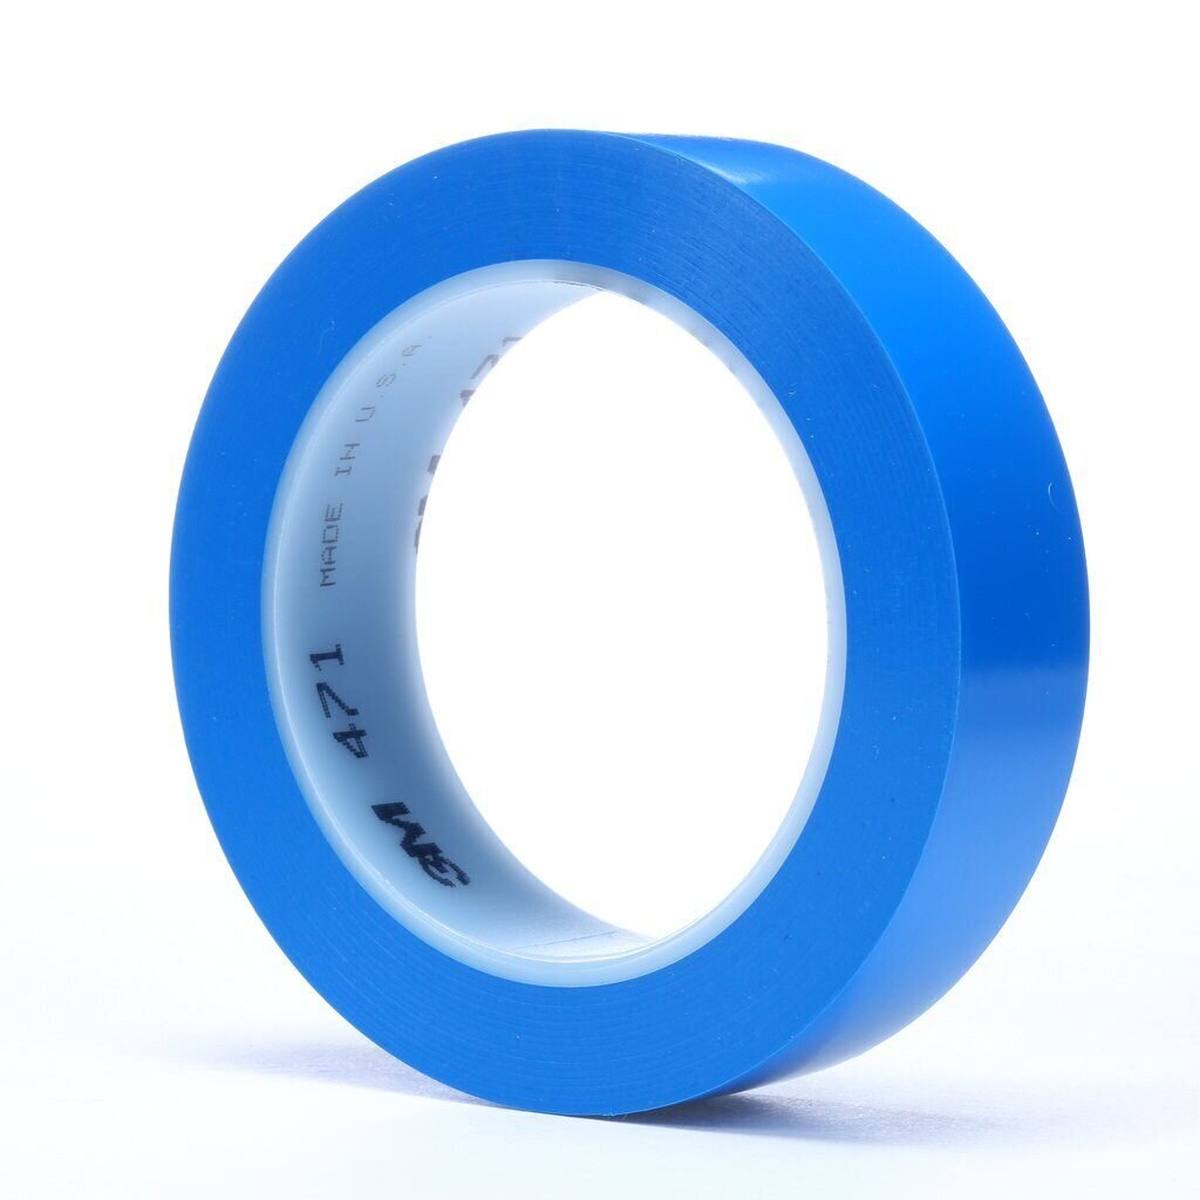 3M ruban adhésif en PVC souple 471 F, bleu, 25 mm x 33 m, 0,13 mm